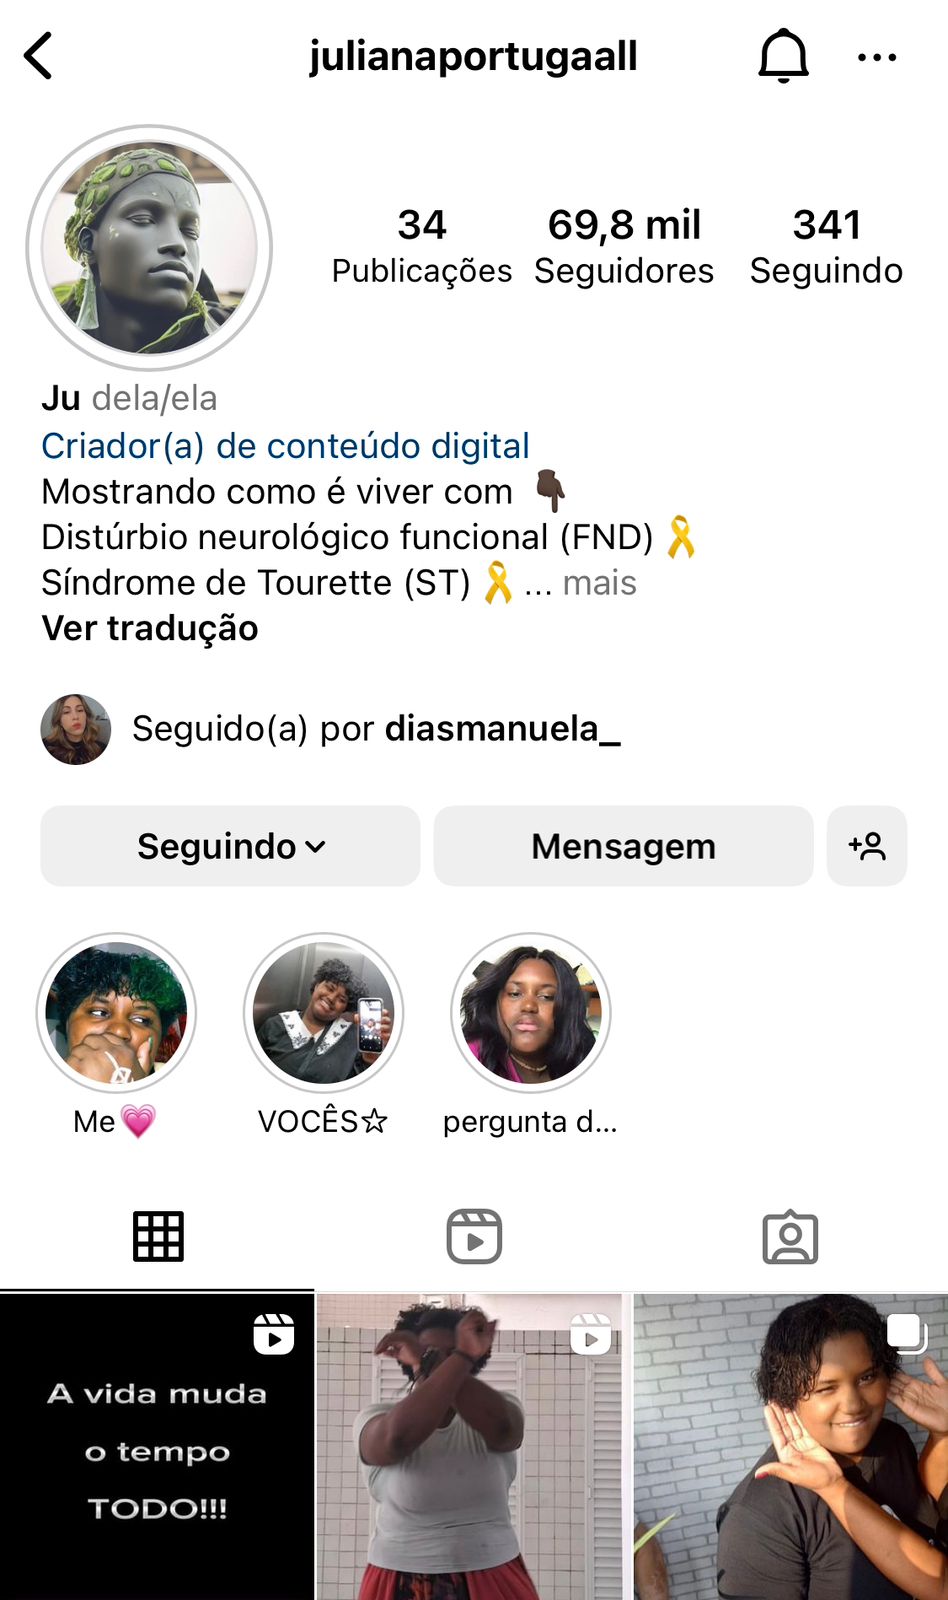 Para acompanhar e conhecer mais sobre Juliana Portugal, siga sua conta no Instagram (@julianaportugaall) e no Tik Tok (juliana portugal) / Reprodução: Instagram.